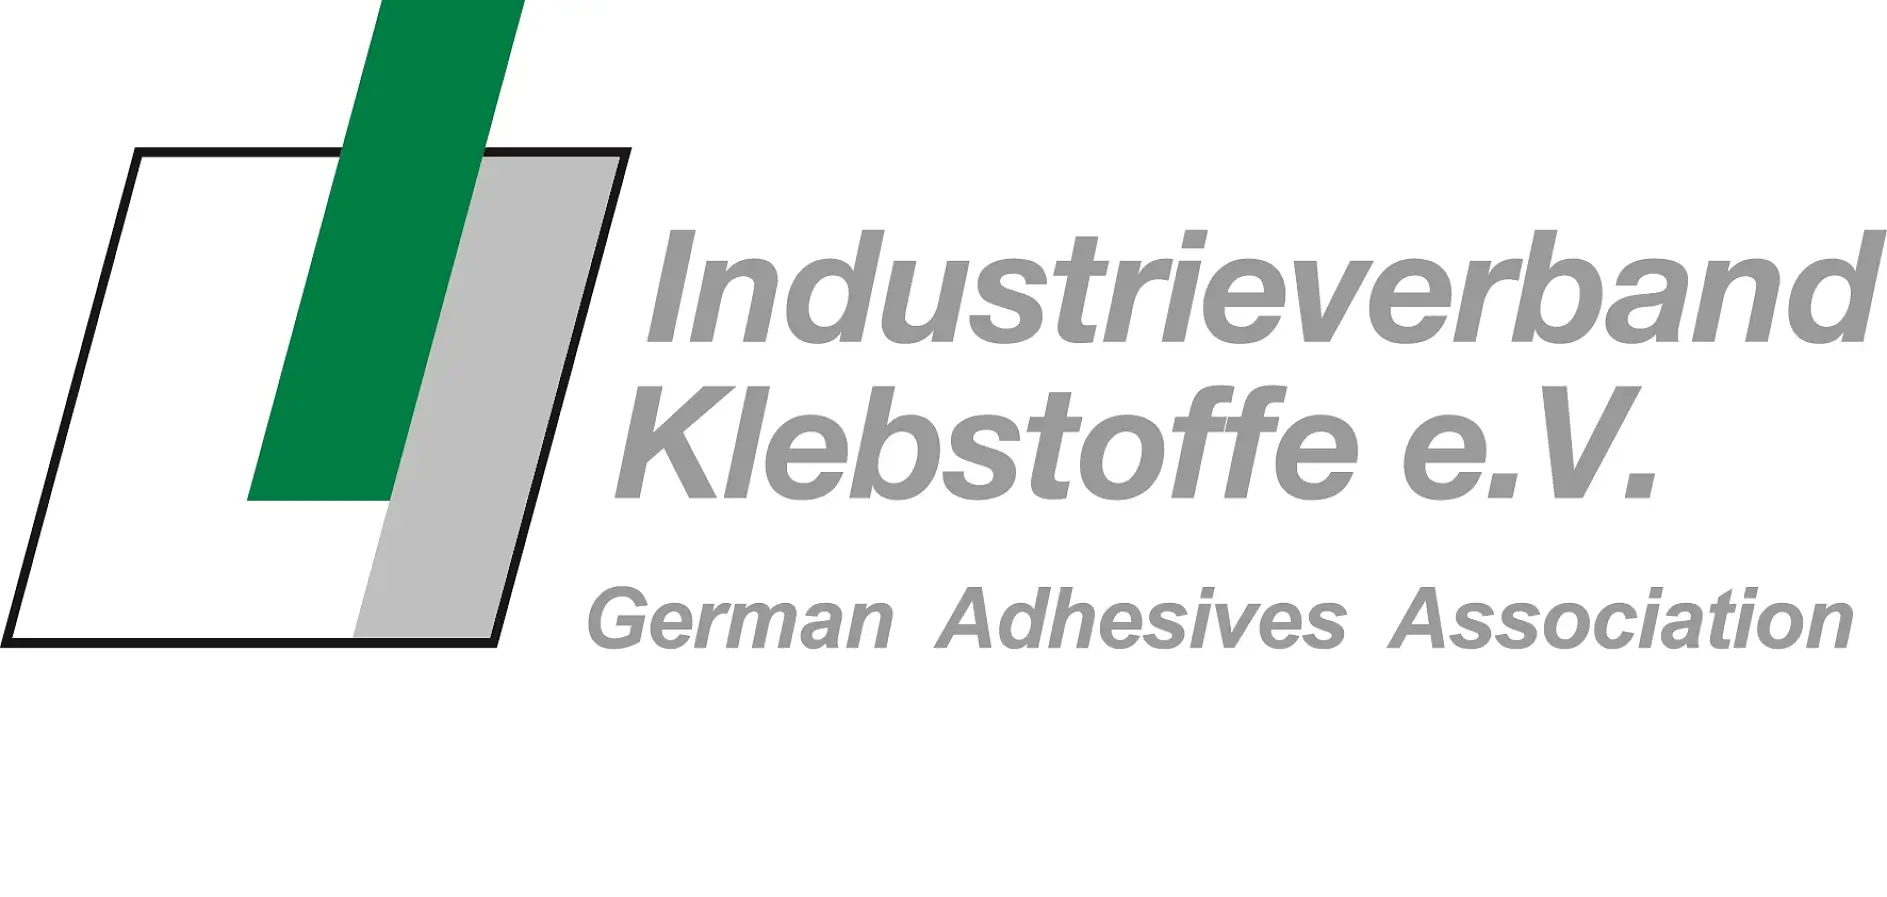 La Asociación Alemana de Adhesivos es la organización nacional más grande del mundo (y gracias a su cartera de servicios también es la primera del mundo) en el ámbito de la tecnología de fijación adhesiva.